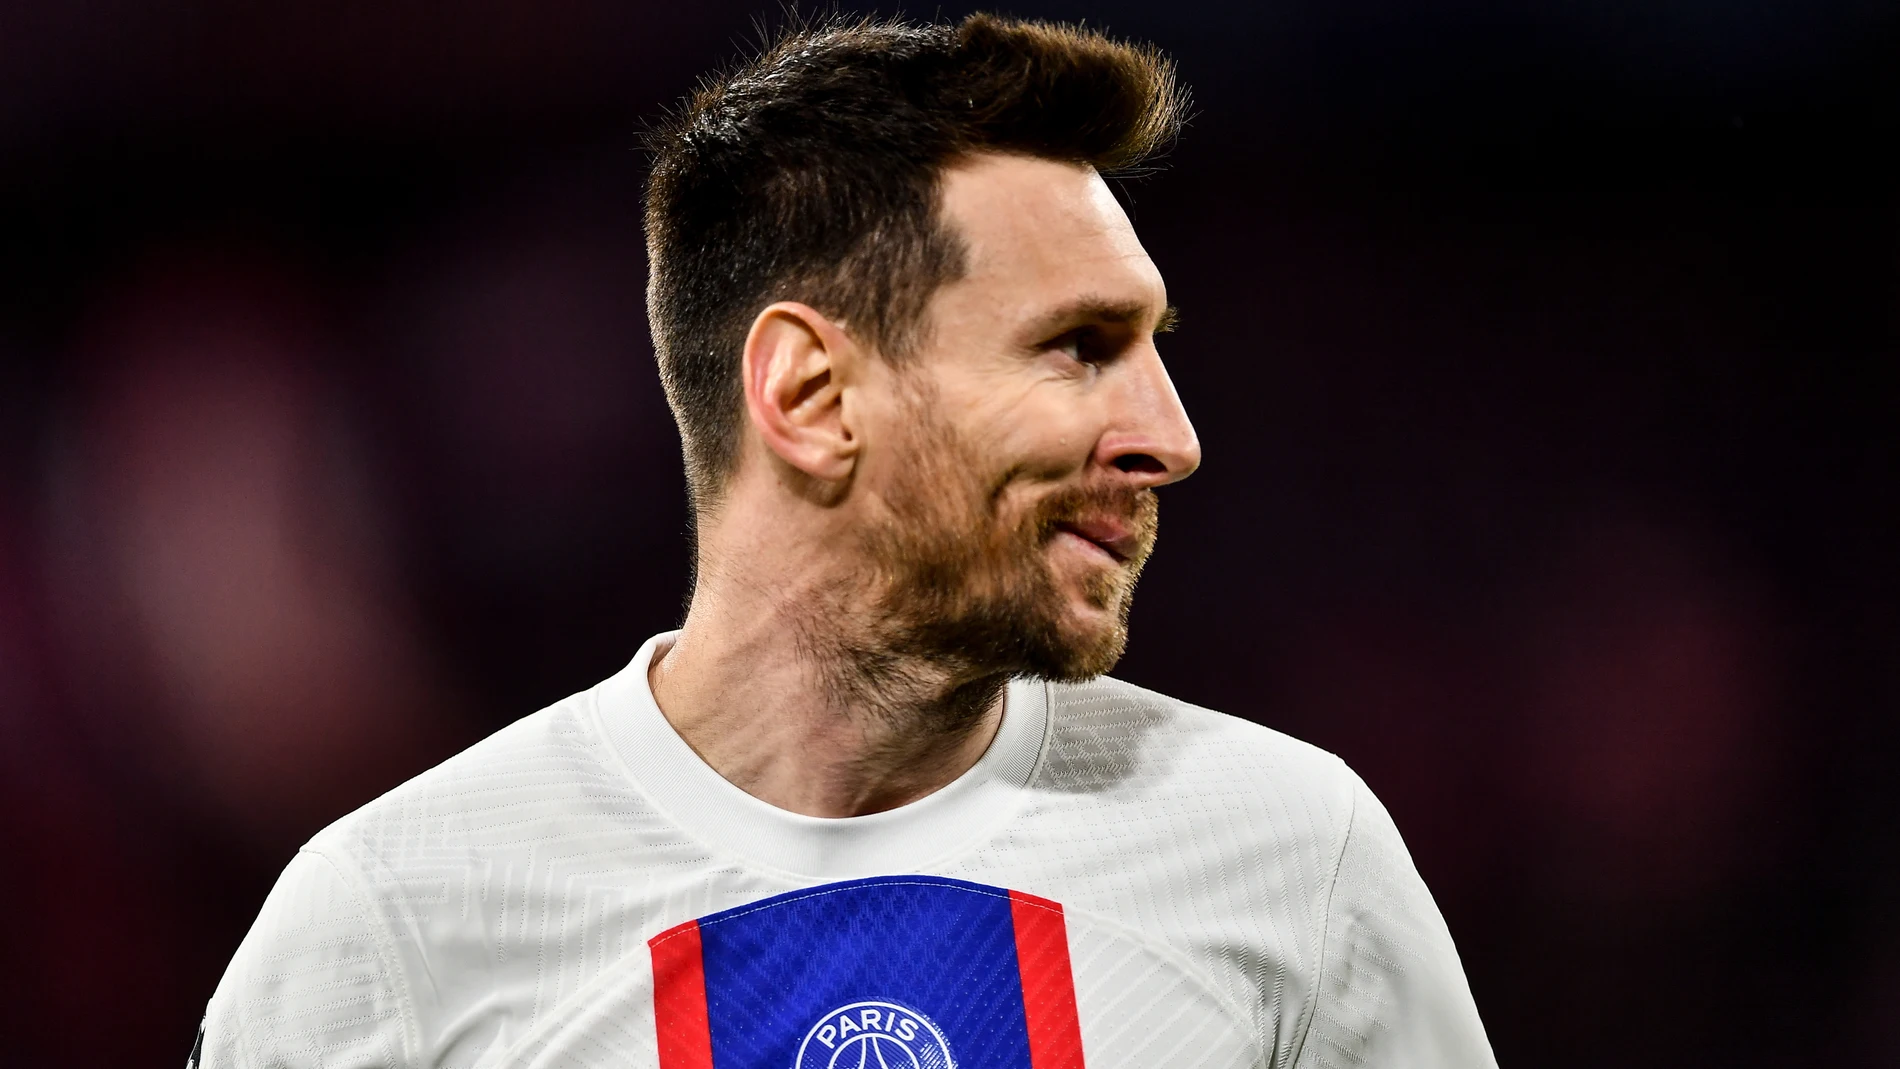 Leo Messi finaliza su contrato con el PSG en junio